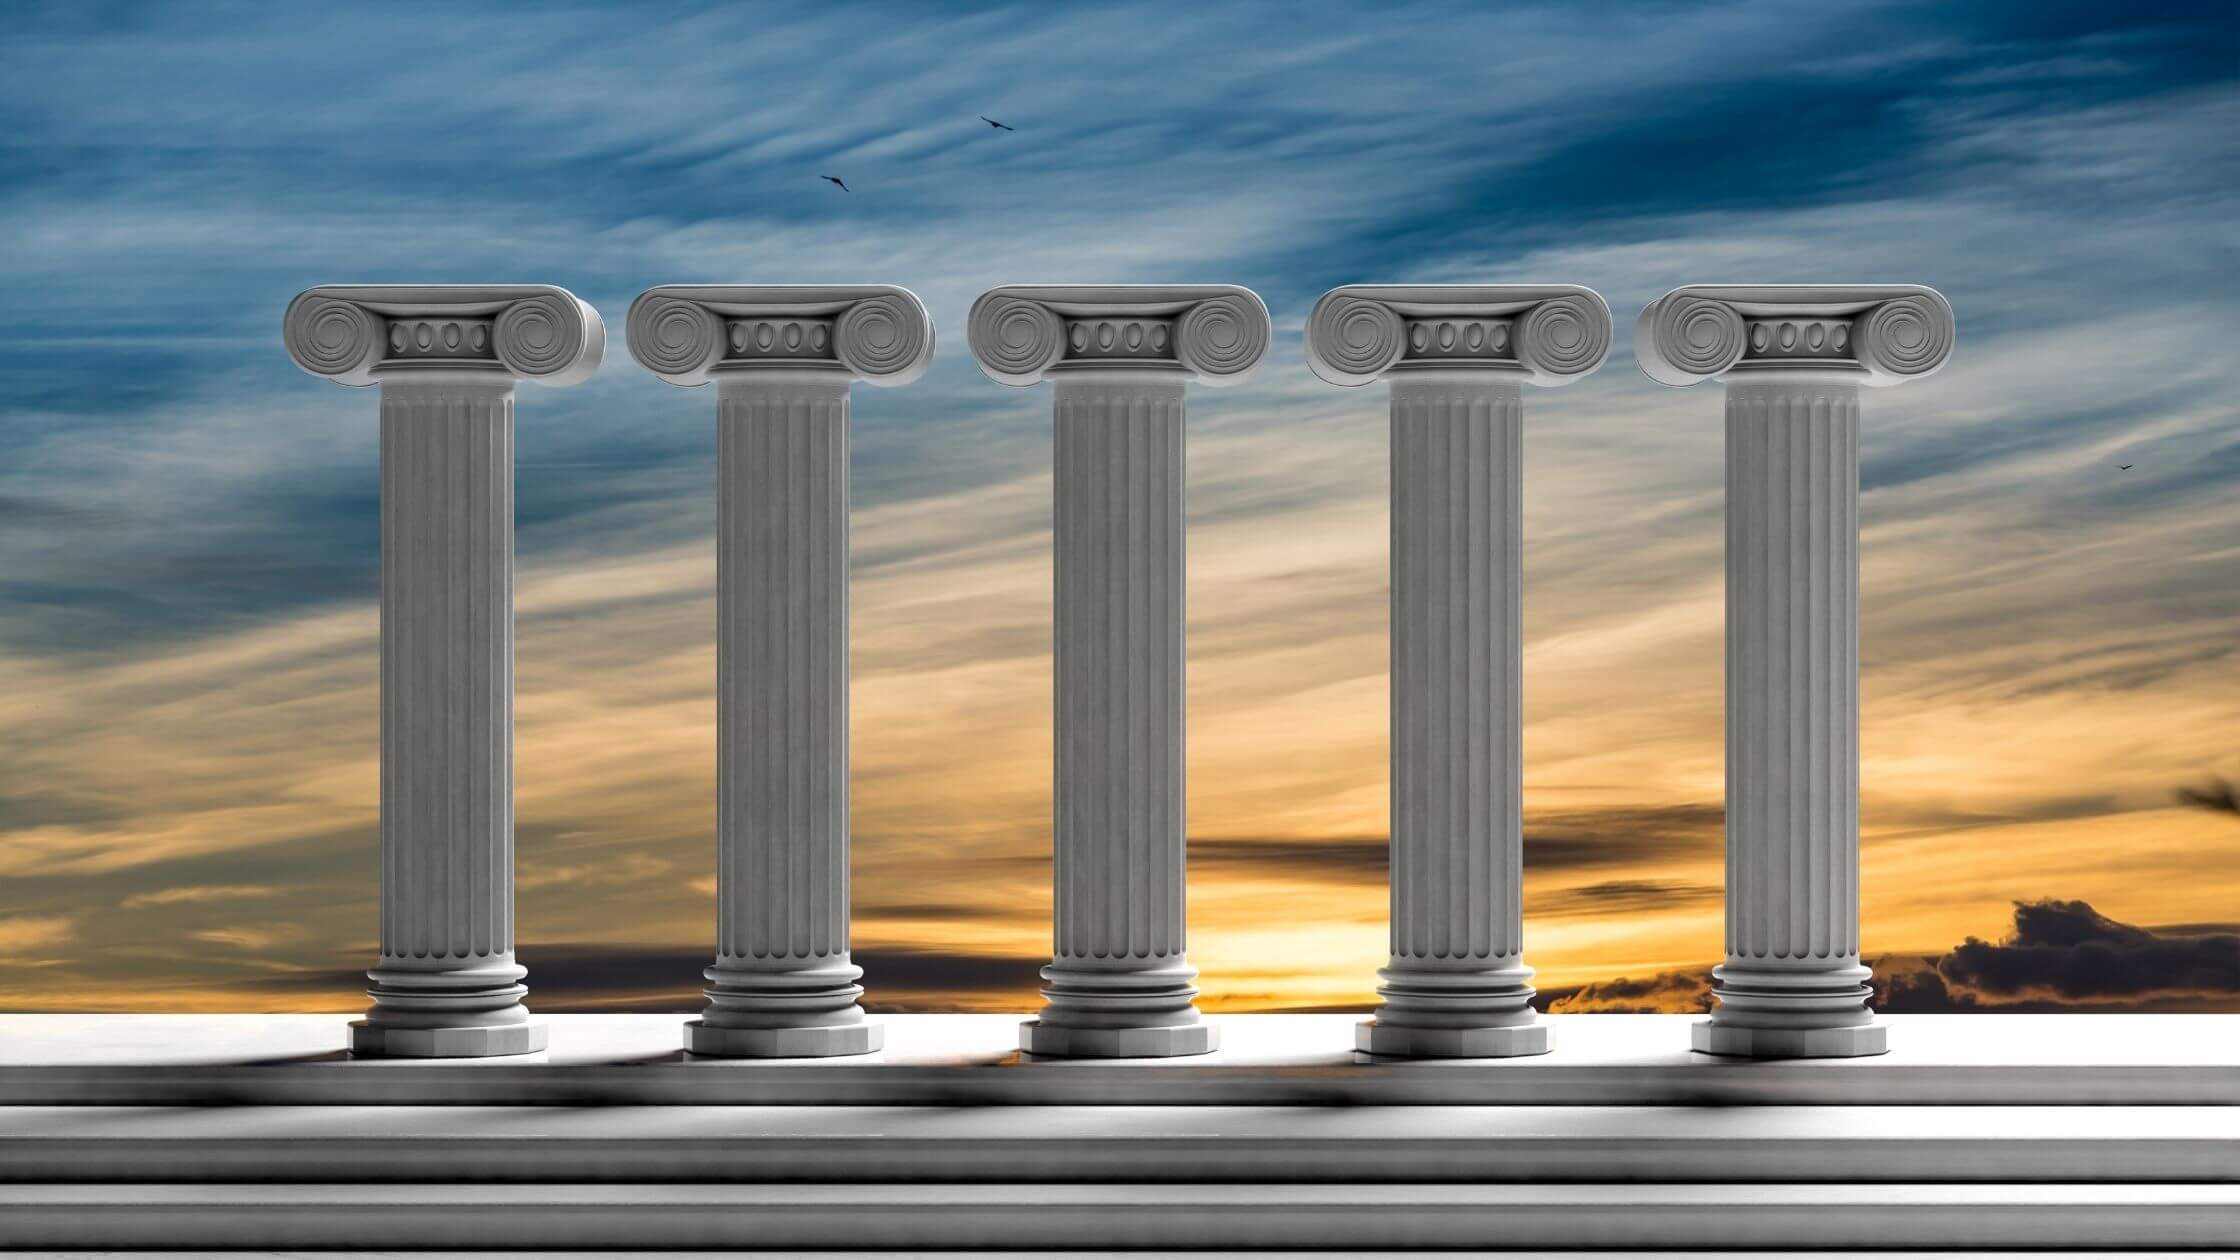 greek pillars representing the content pillars for social media